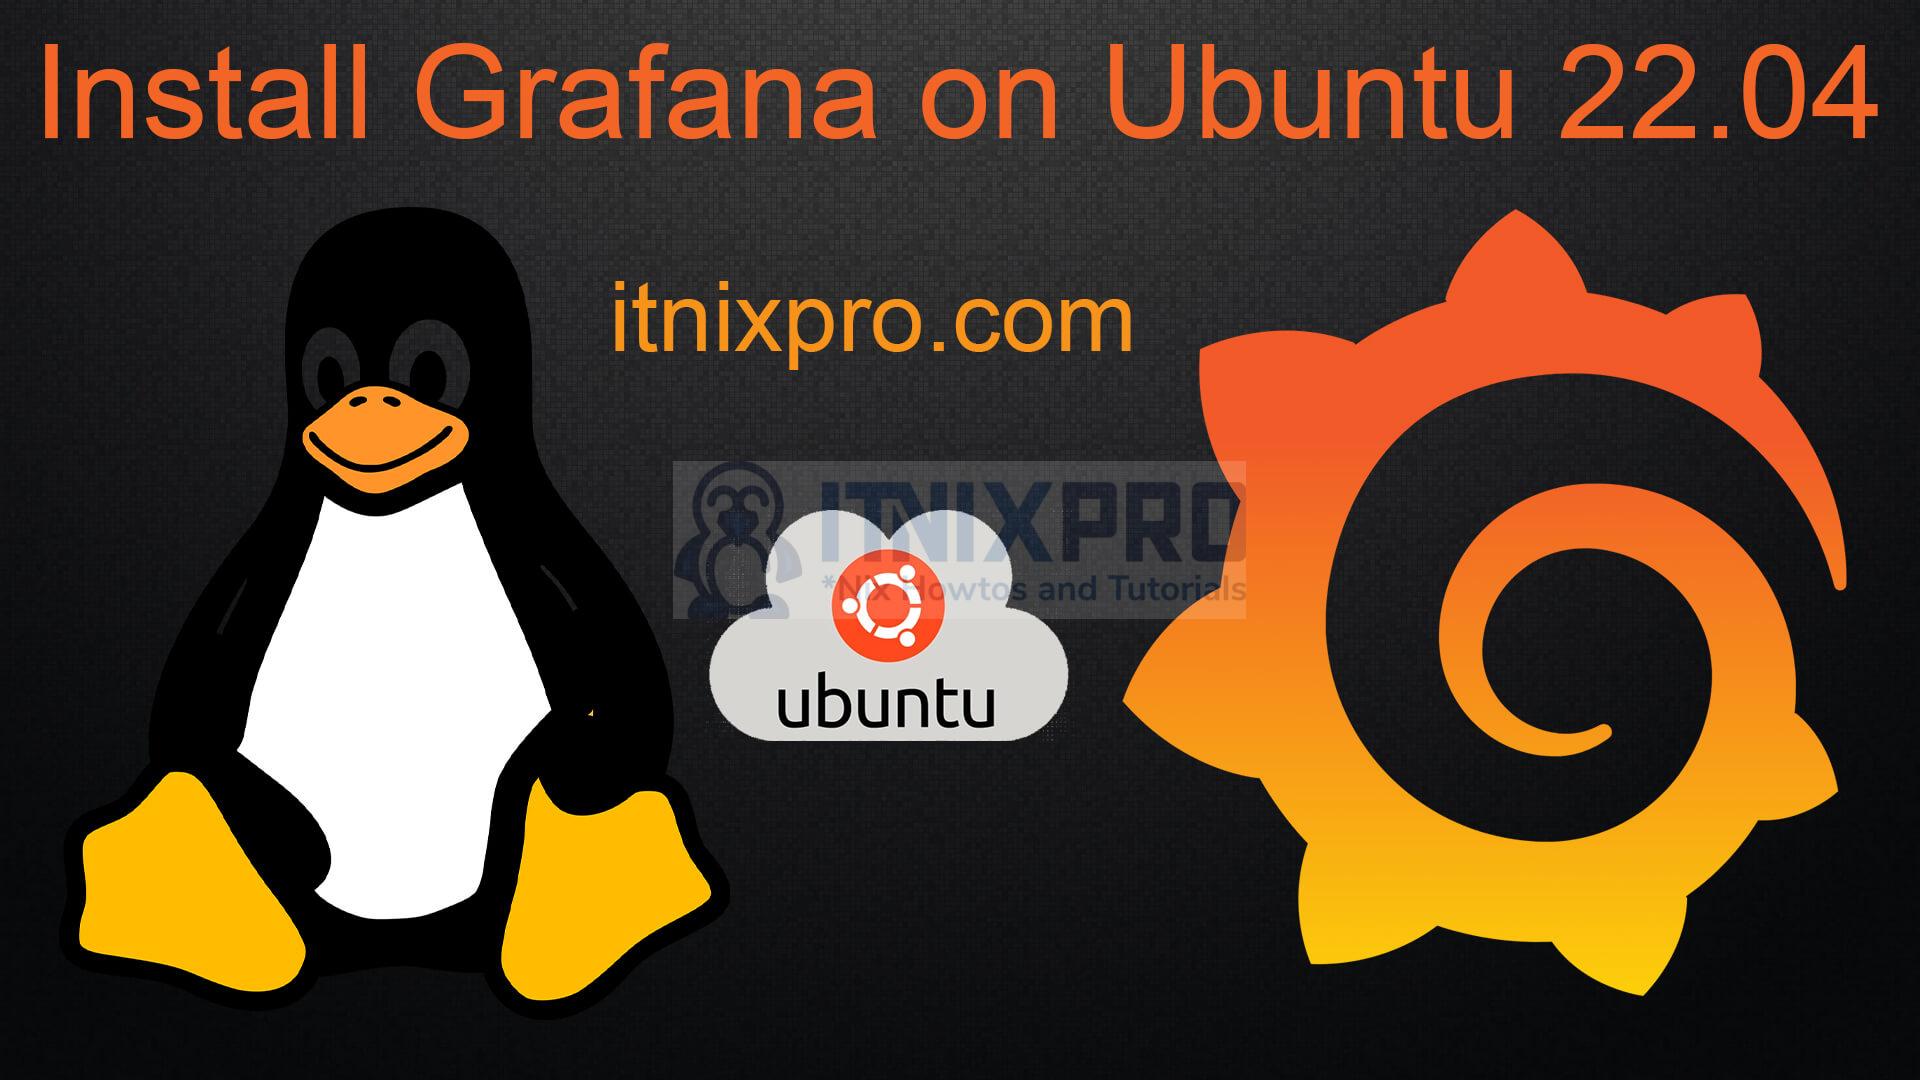 Install Grafana on Ubuntu 22.04